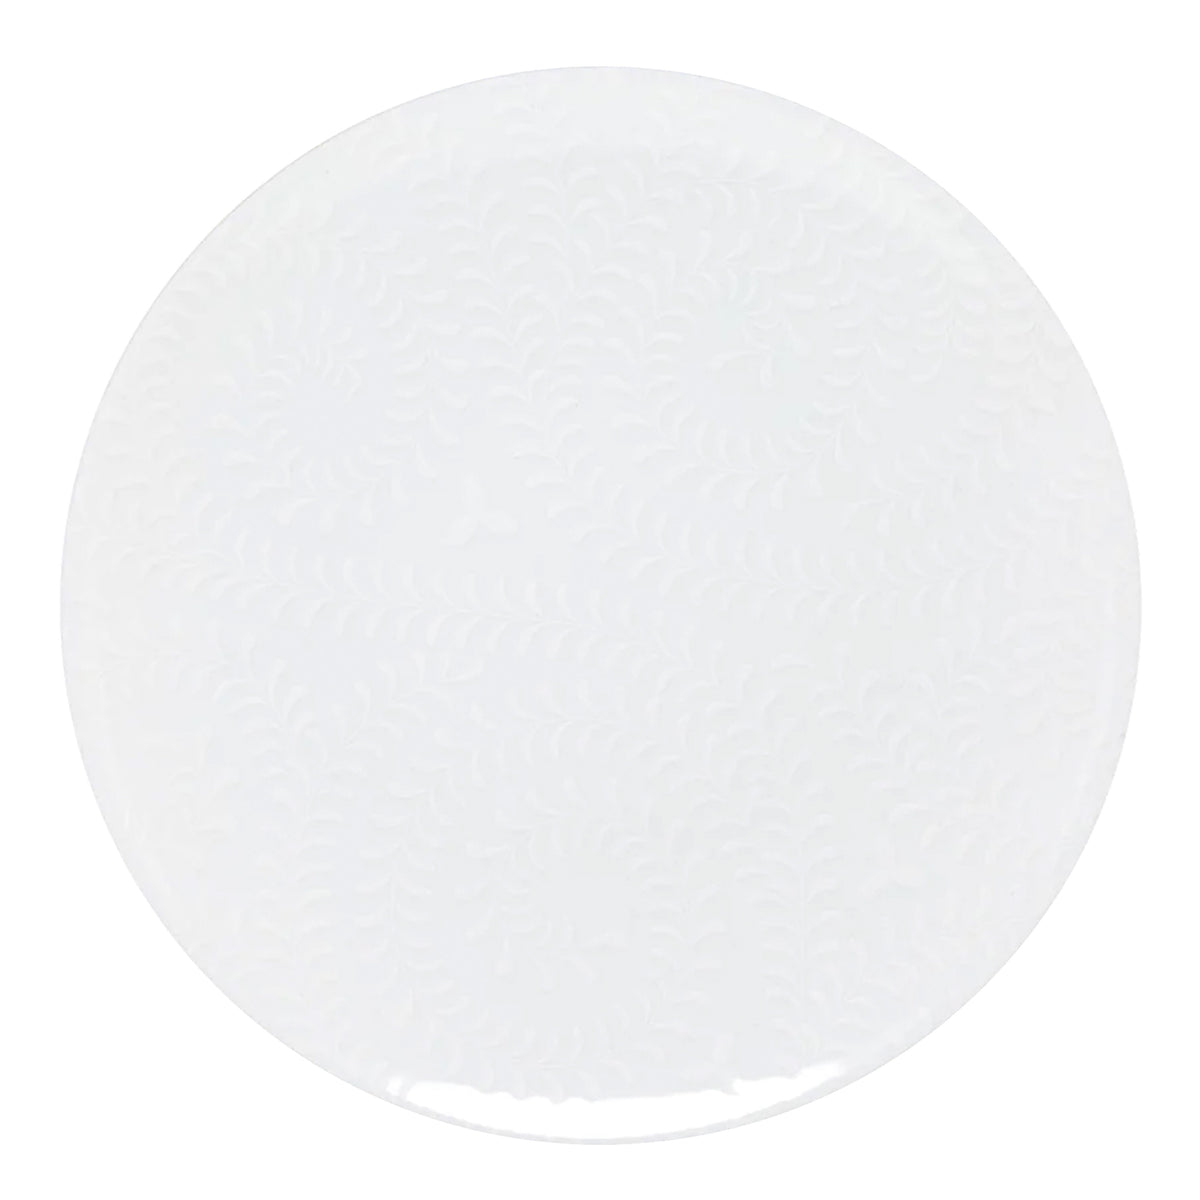 ARJUNA blanc sur blanc - Assiette de présentation